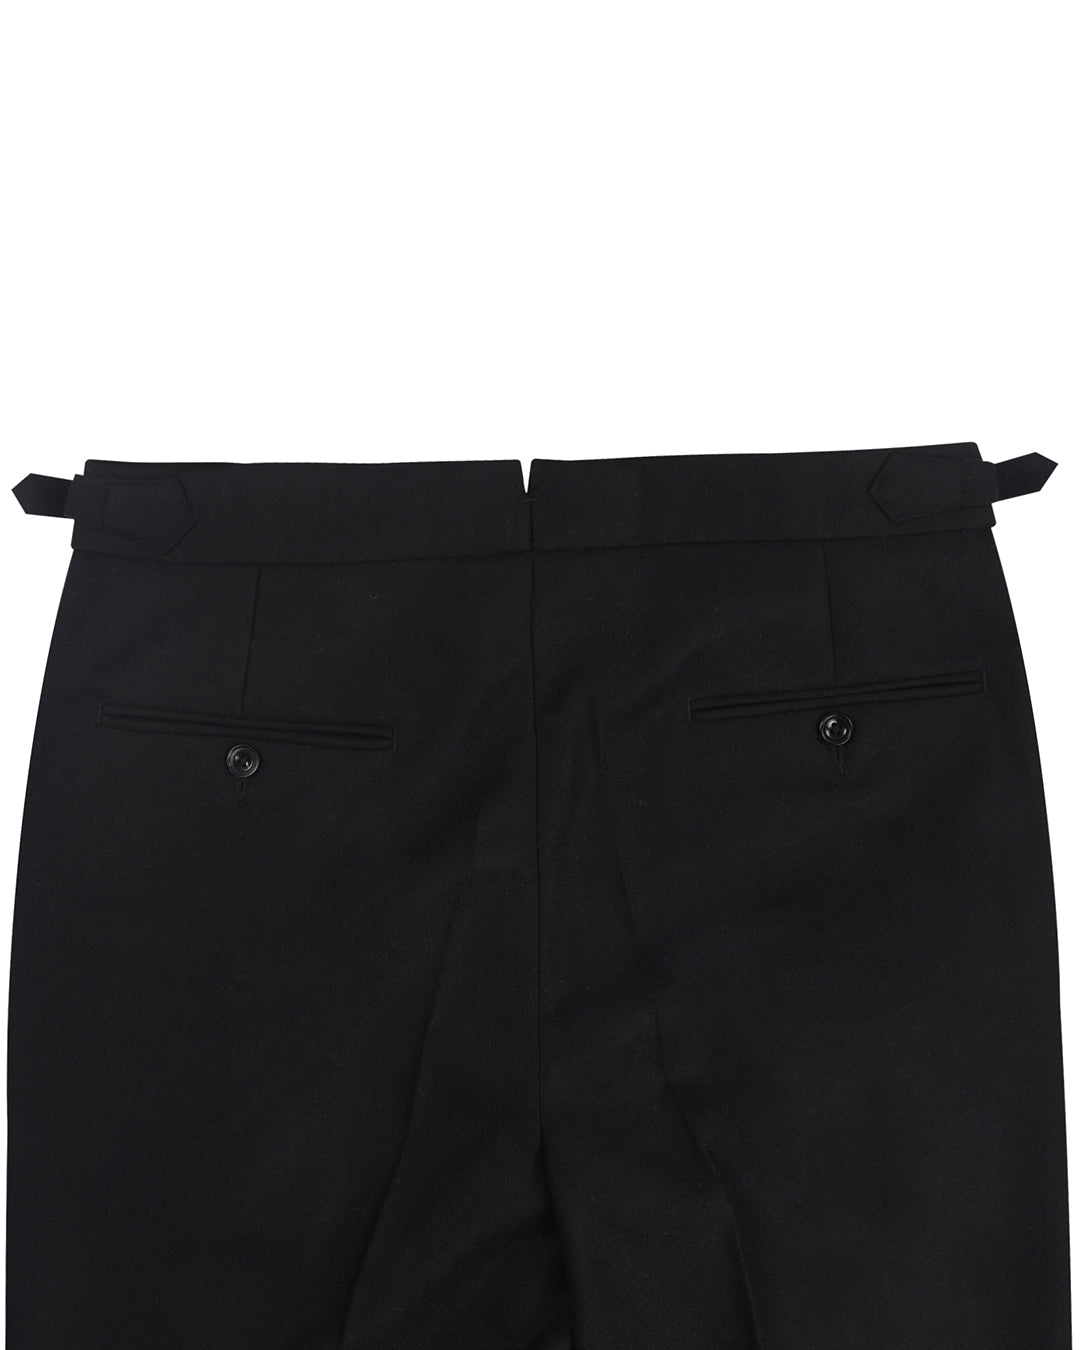 Minnis Flannel: Black Twill Pants